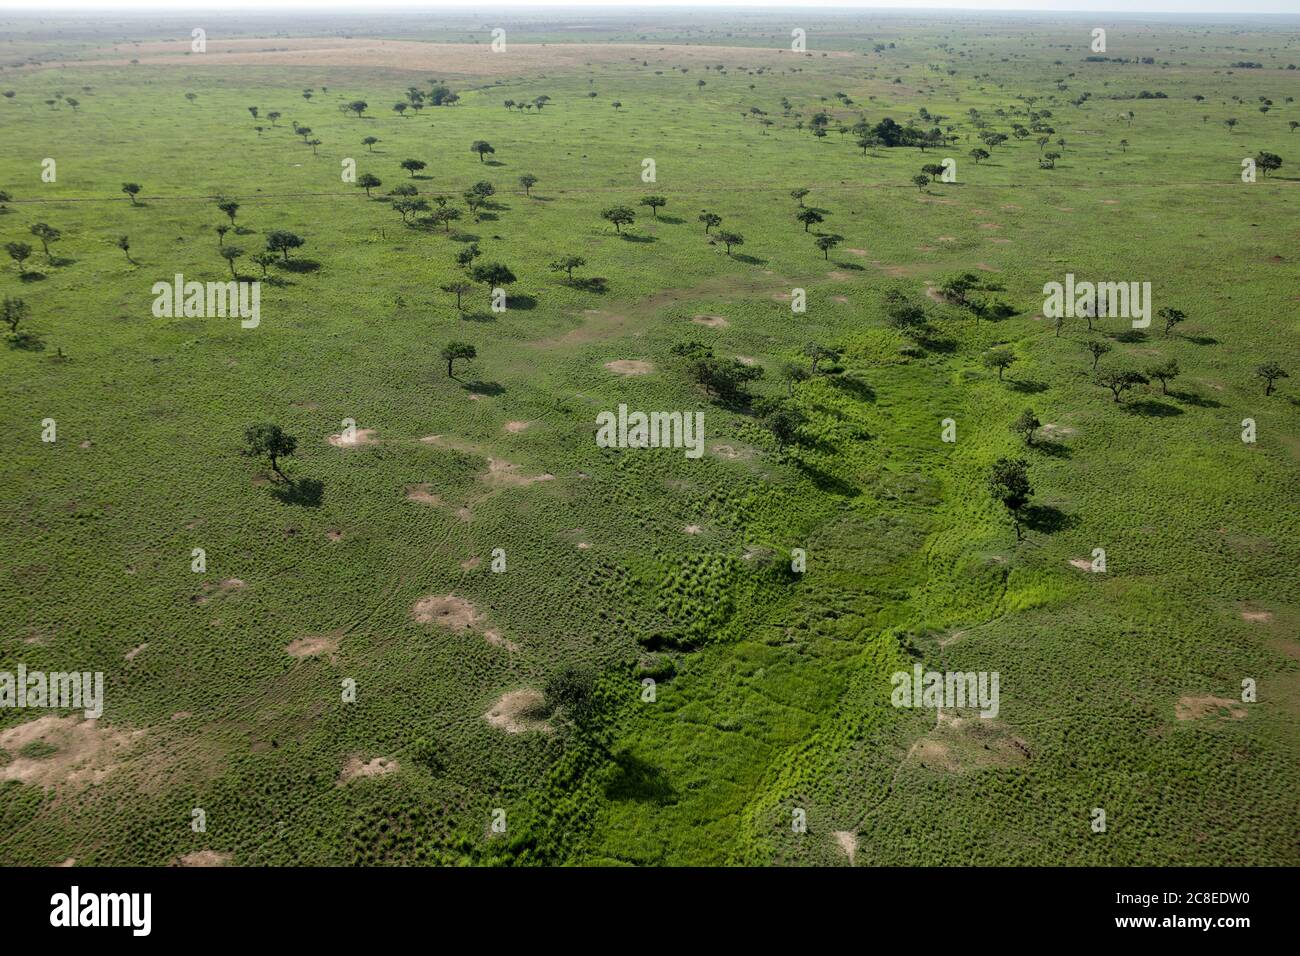 République démocratique du Congo, vue aérienne du paysage vert du parc national de la Garamba Banque D'Images